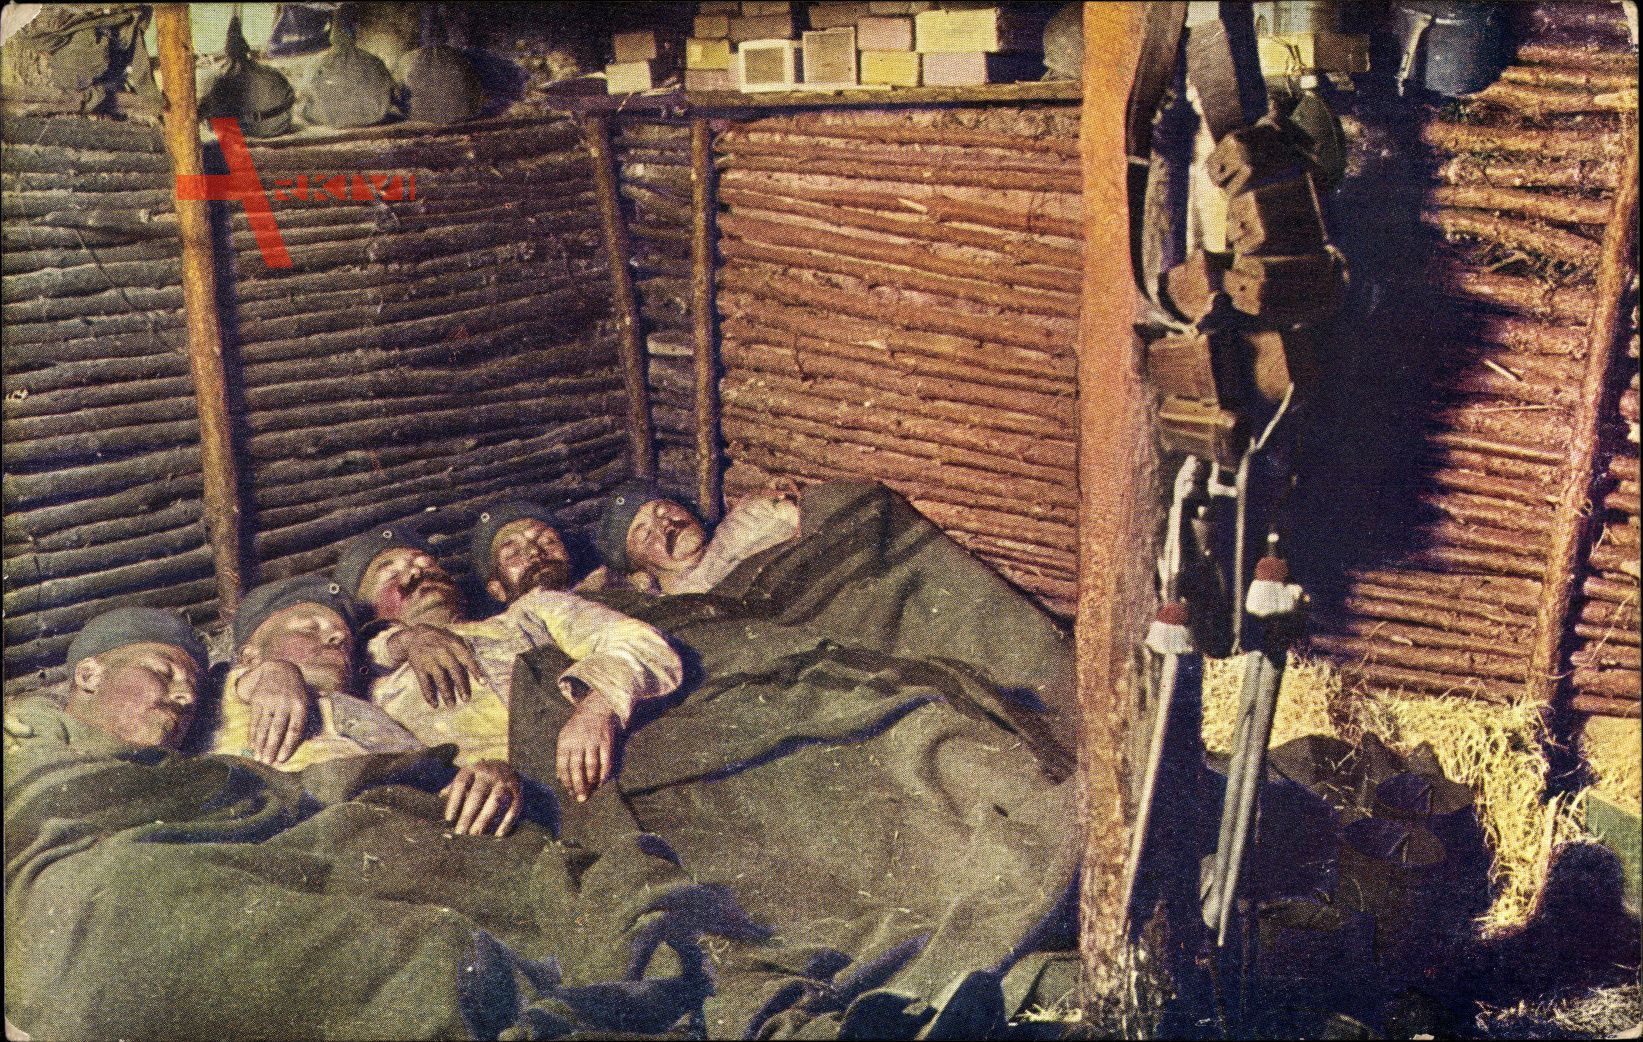 Nachtruhe in bombensicherem Unterstand, Soldaten schlafen